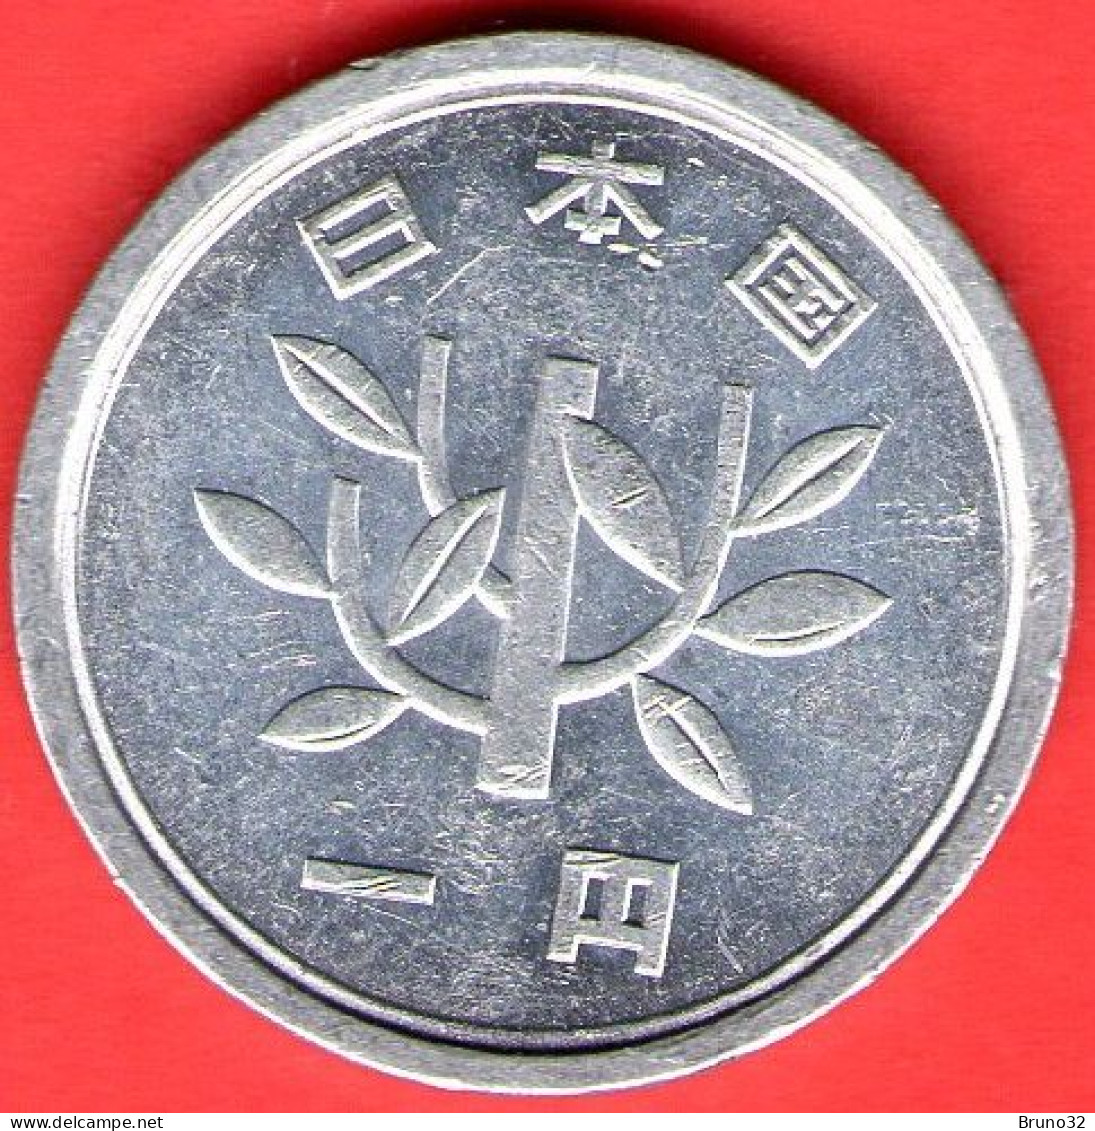 Giappone - Japan - Japon - 1 Yen - QFDC/aUNC - Come Da Foto - Japon